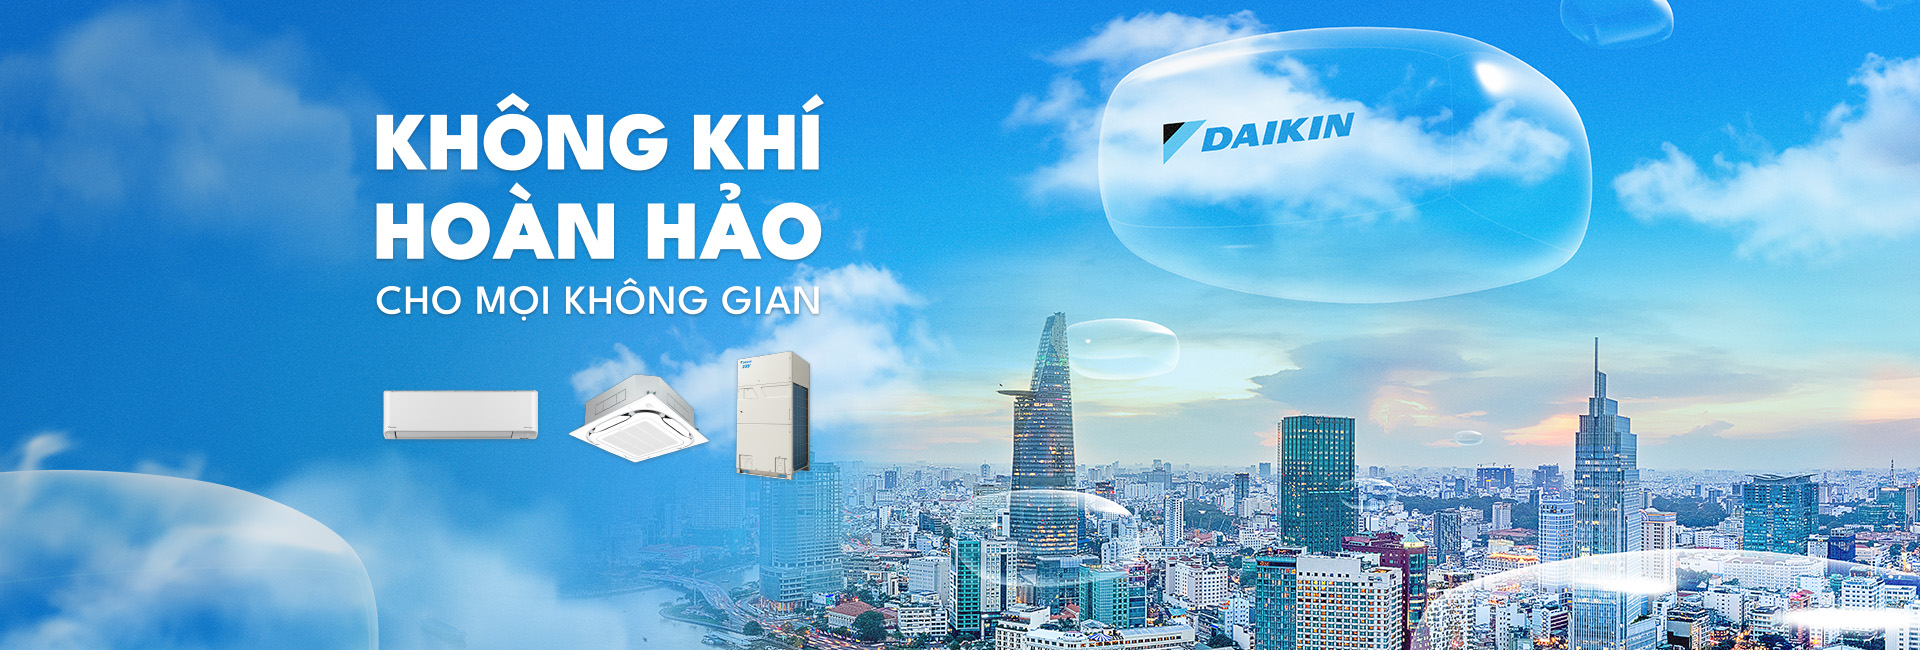 Điều Hòa Daikin - Máy lọc không khí - Máy lạnh Daikin Inverter | Daikin  E-Shop - Website bán hàng trực tuyến chính hãng Daikin Vietnam